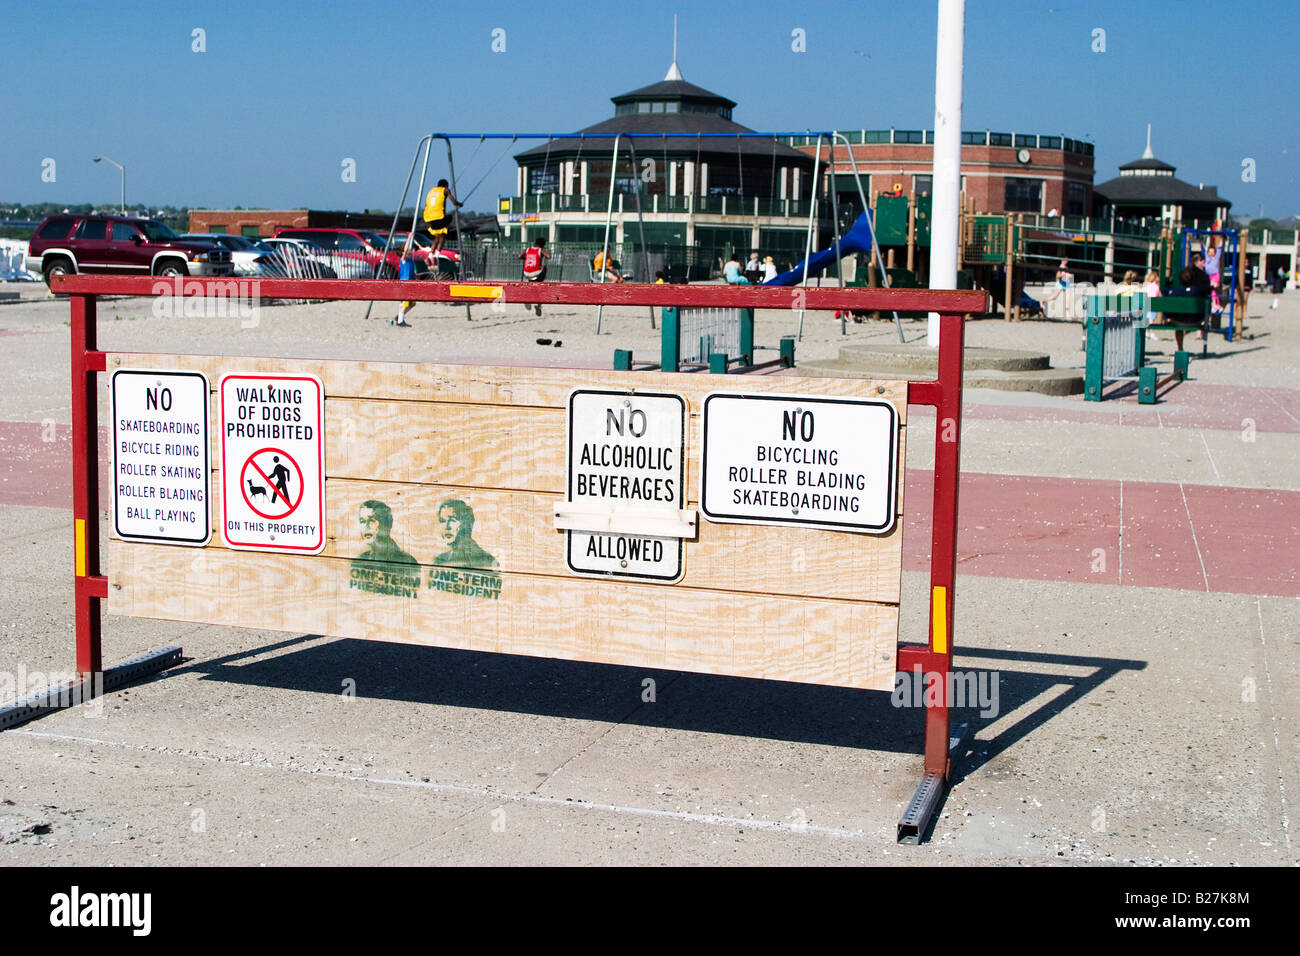 Zu Fuß von Hunden ist verboten und Graffiti auf eine Barriere neben einem Spielplatz Stockfoto